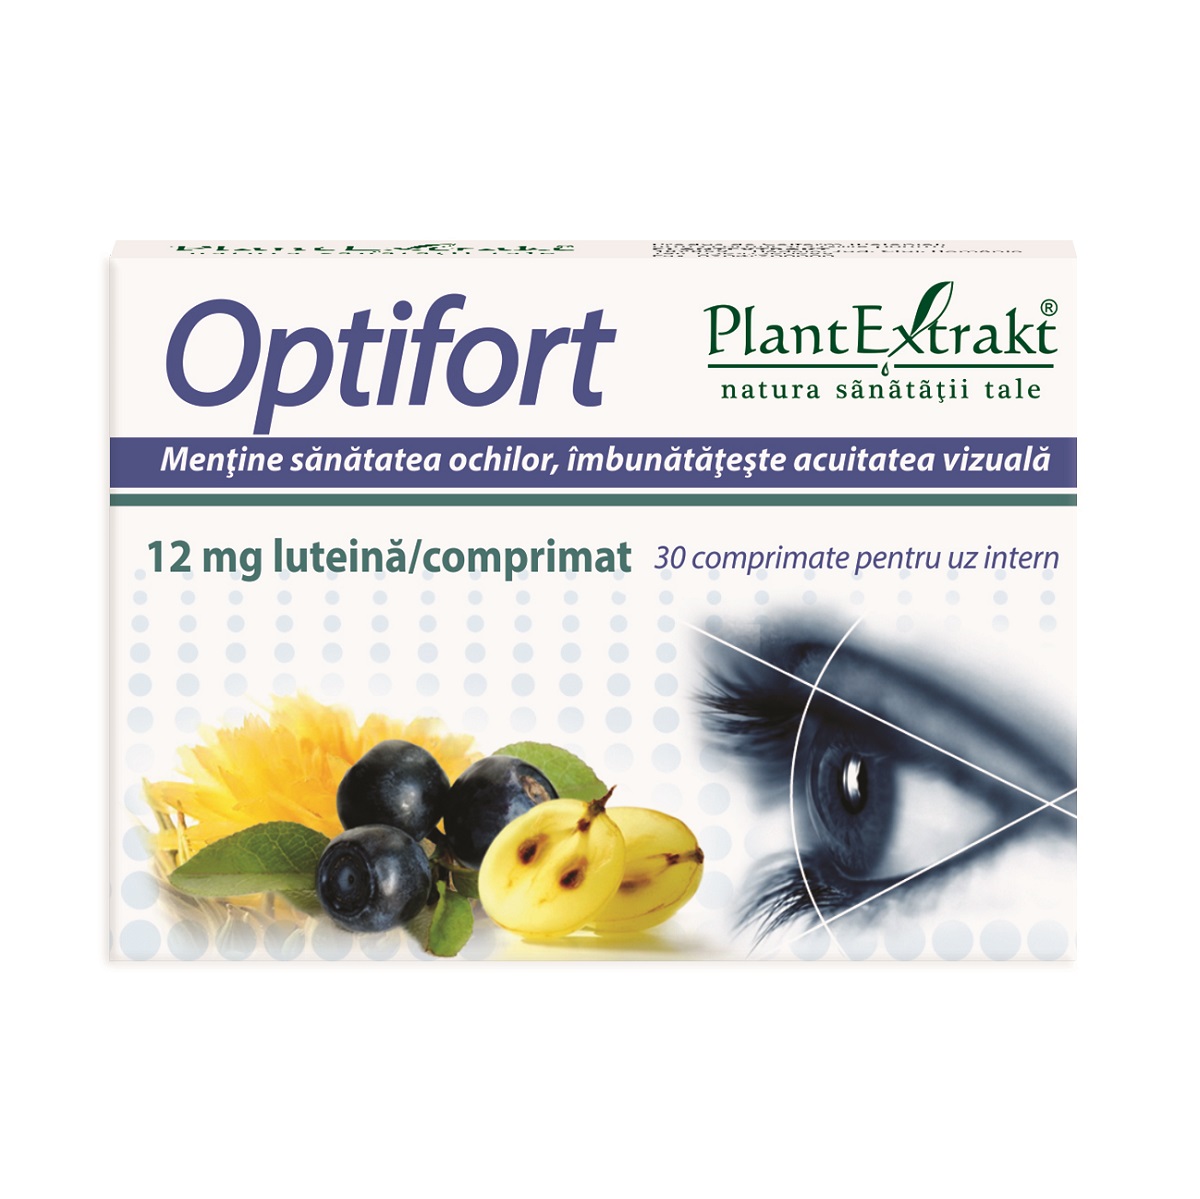 Extracte, tincturi - Optifort 12 mg, Plant Extrakt , nordpharm.ro